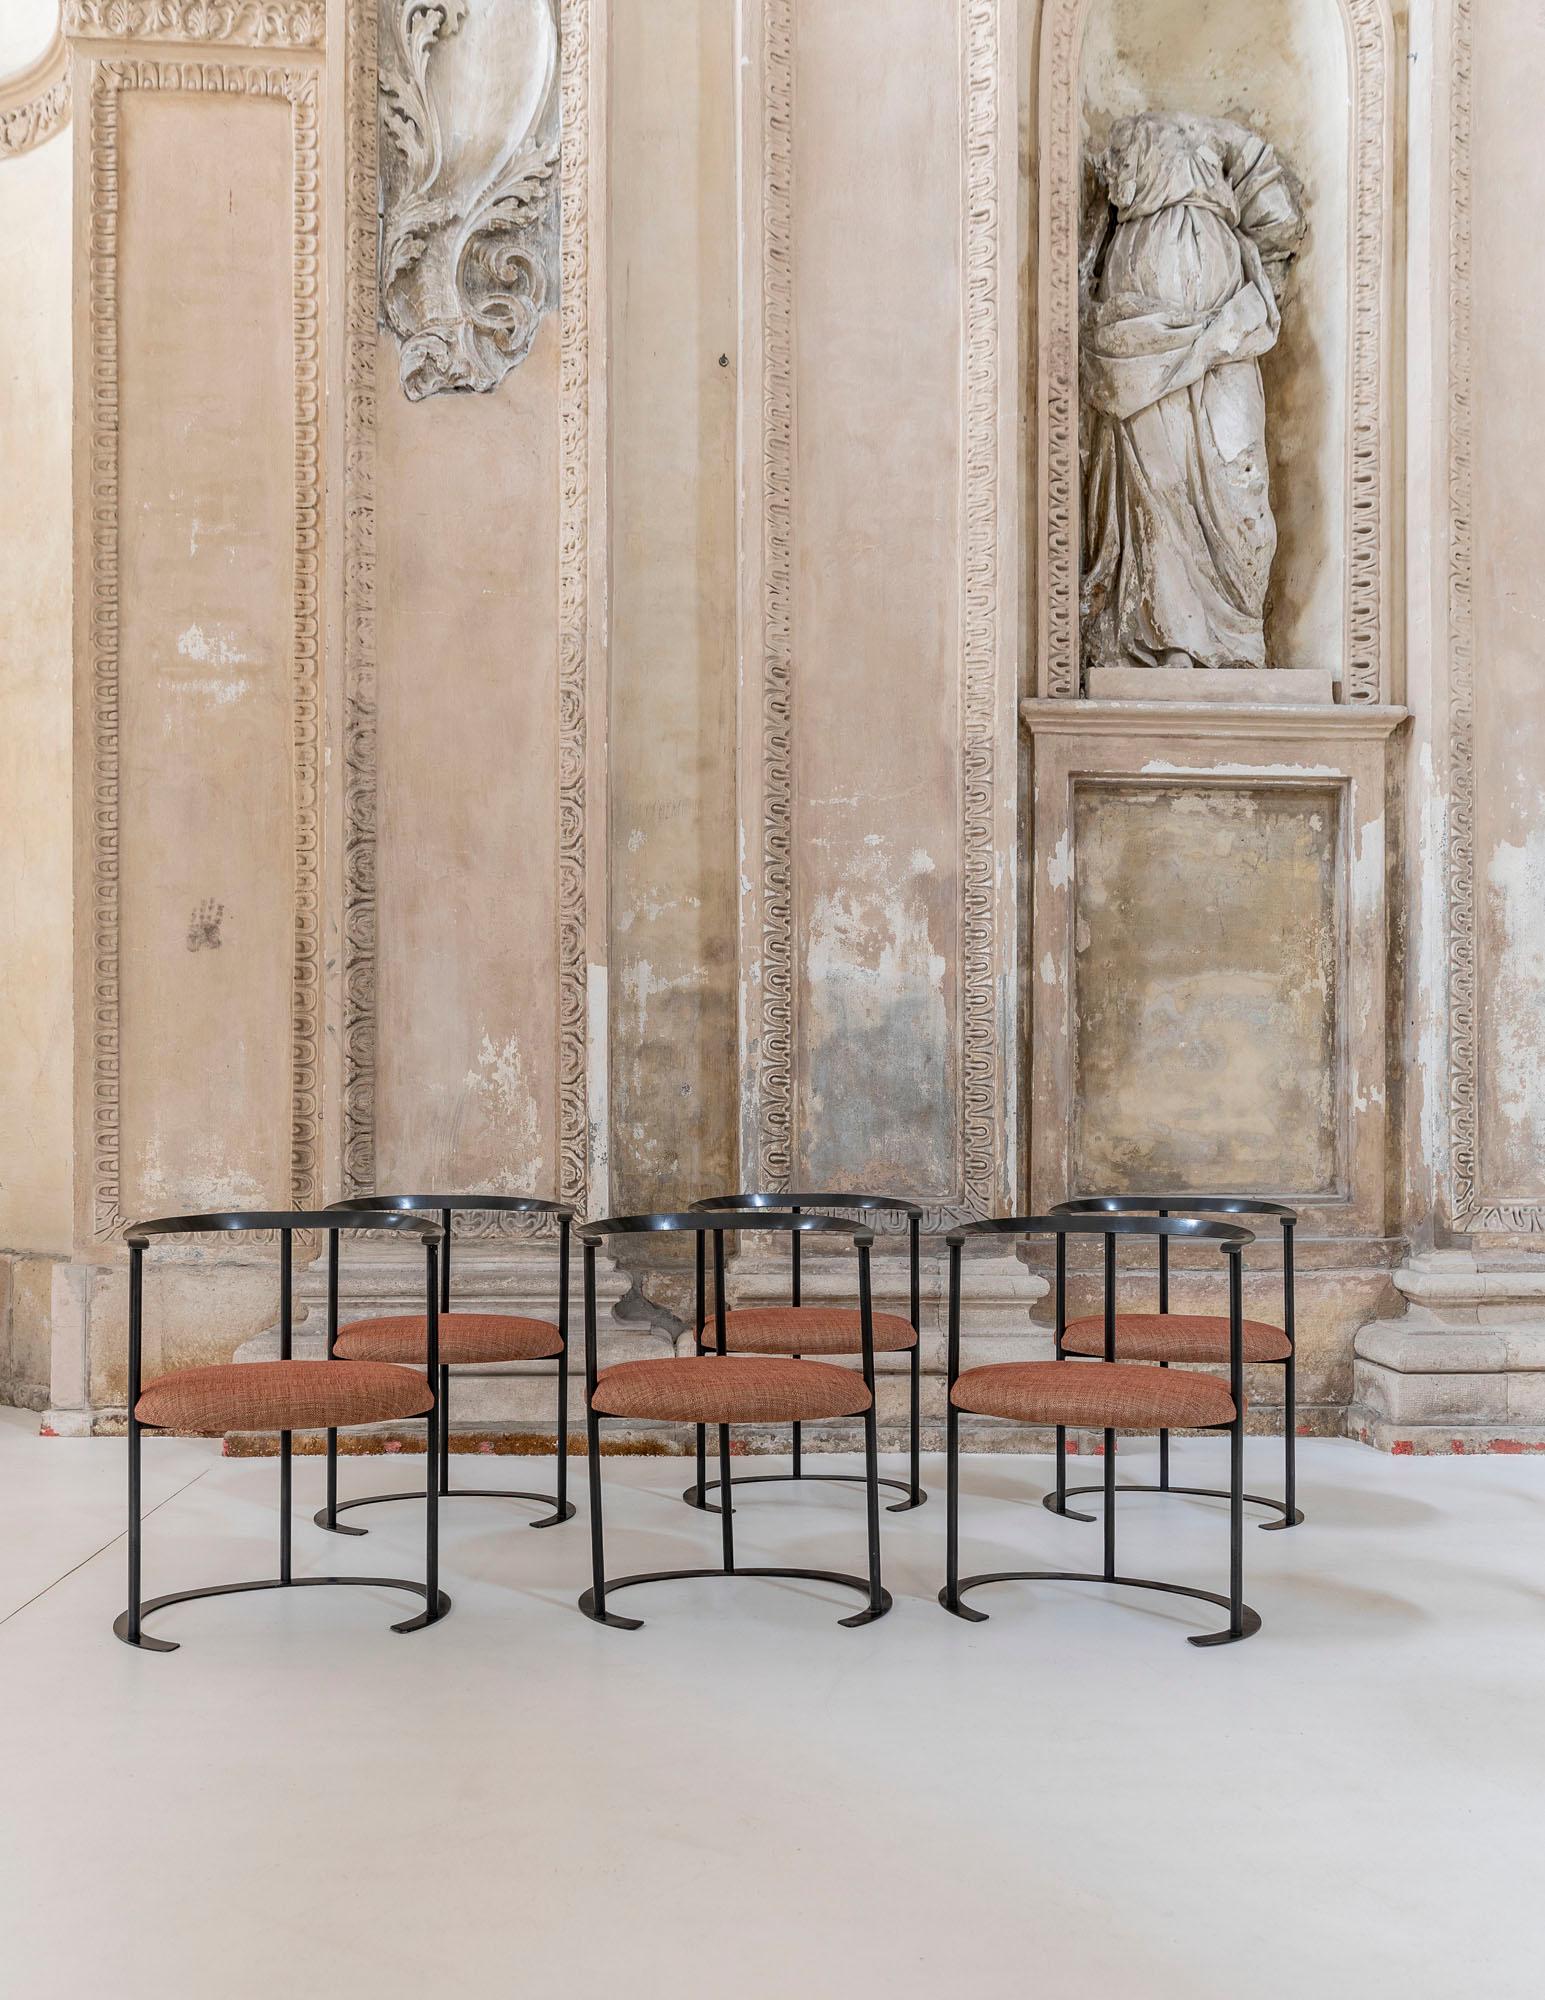 Rare set of 6 Catilina chairs designed by Luigi Caccia Dominioni for Azucena in 1957.
Black lacquered metal and original fabric.
First presented at Triennale di Milano in 1957.
Bibl. Repertorio del Design Italiano 1950-2000, Giuliana Gramigna,